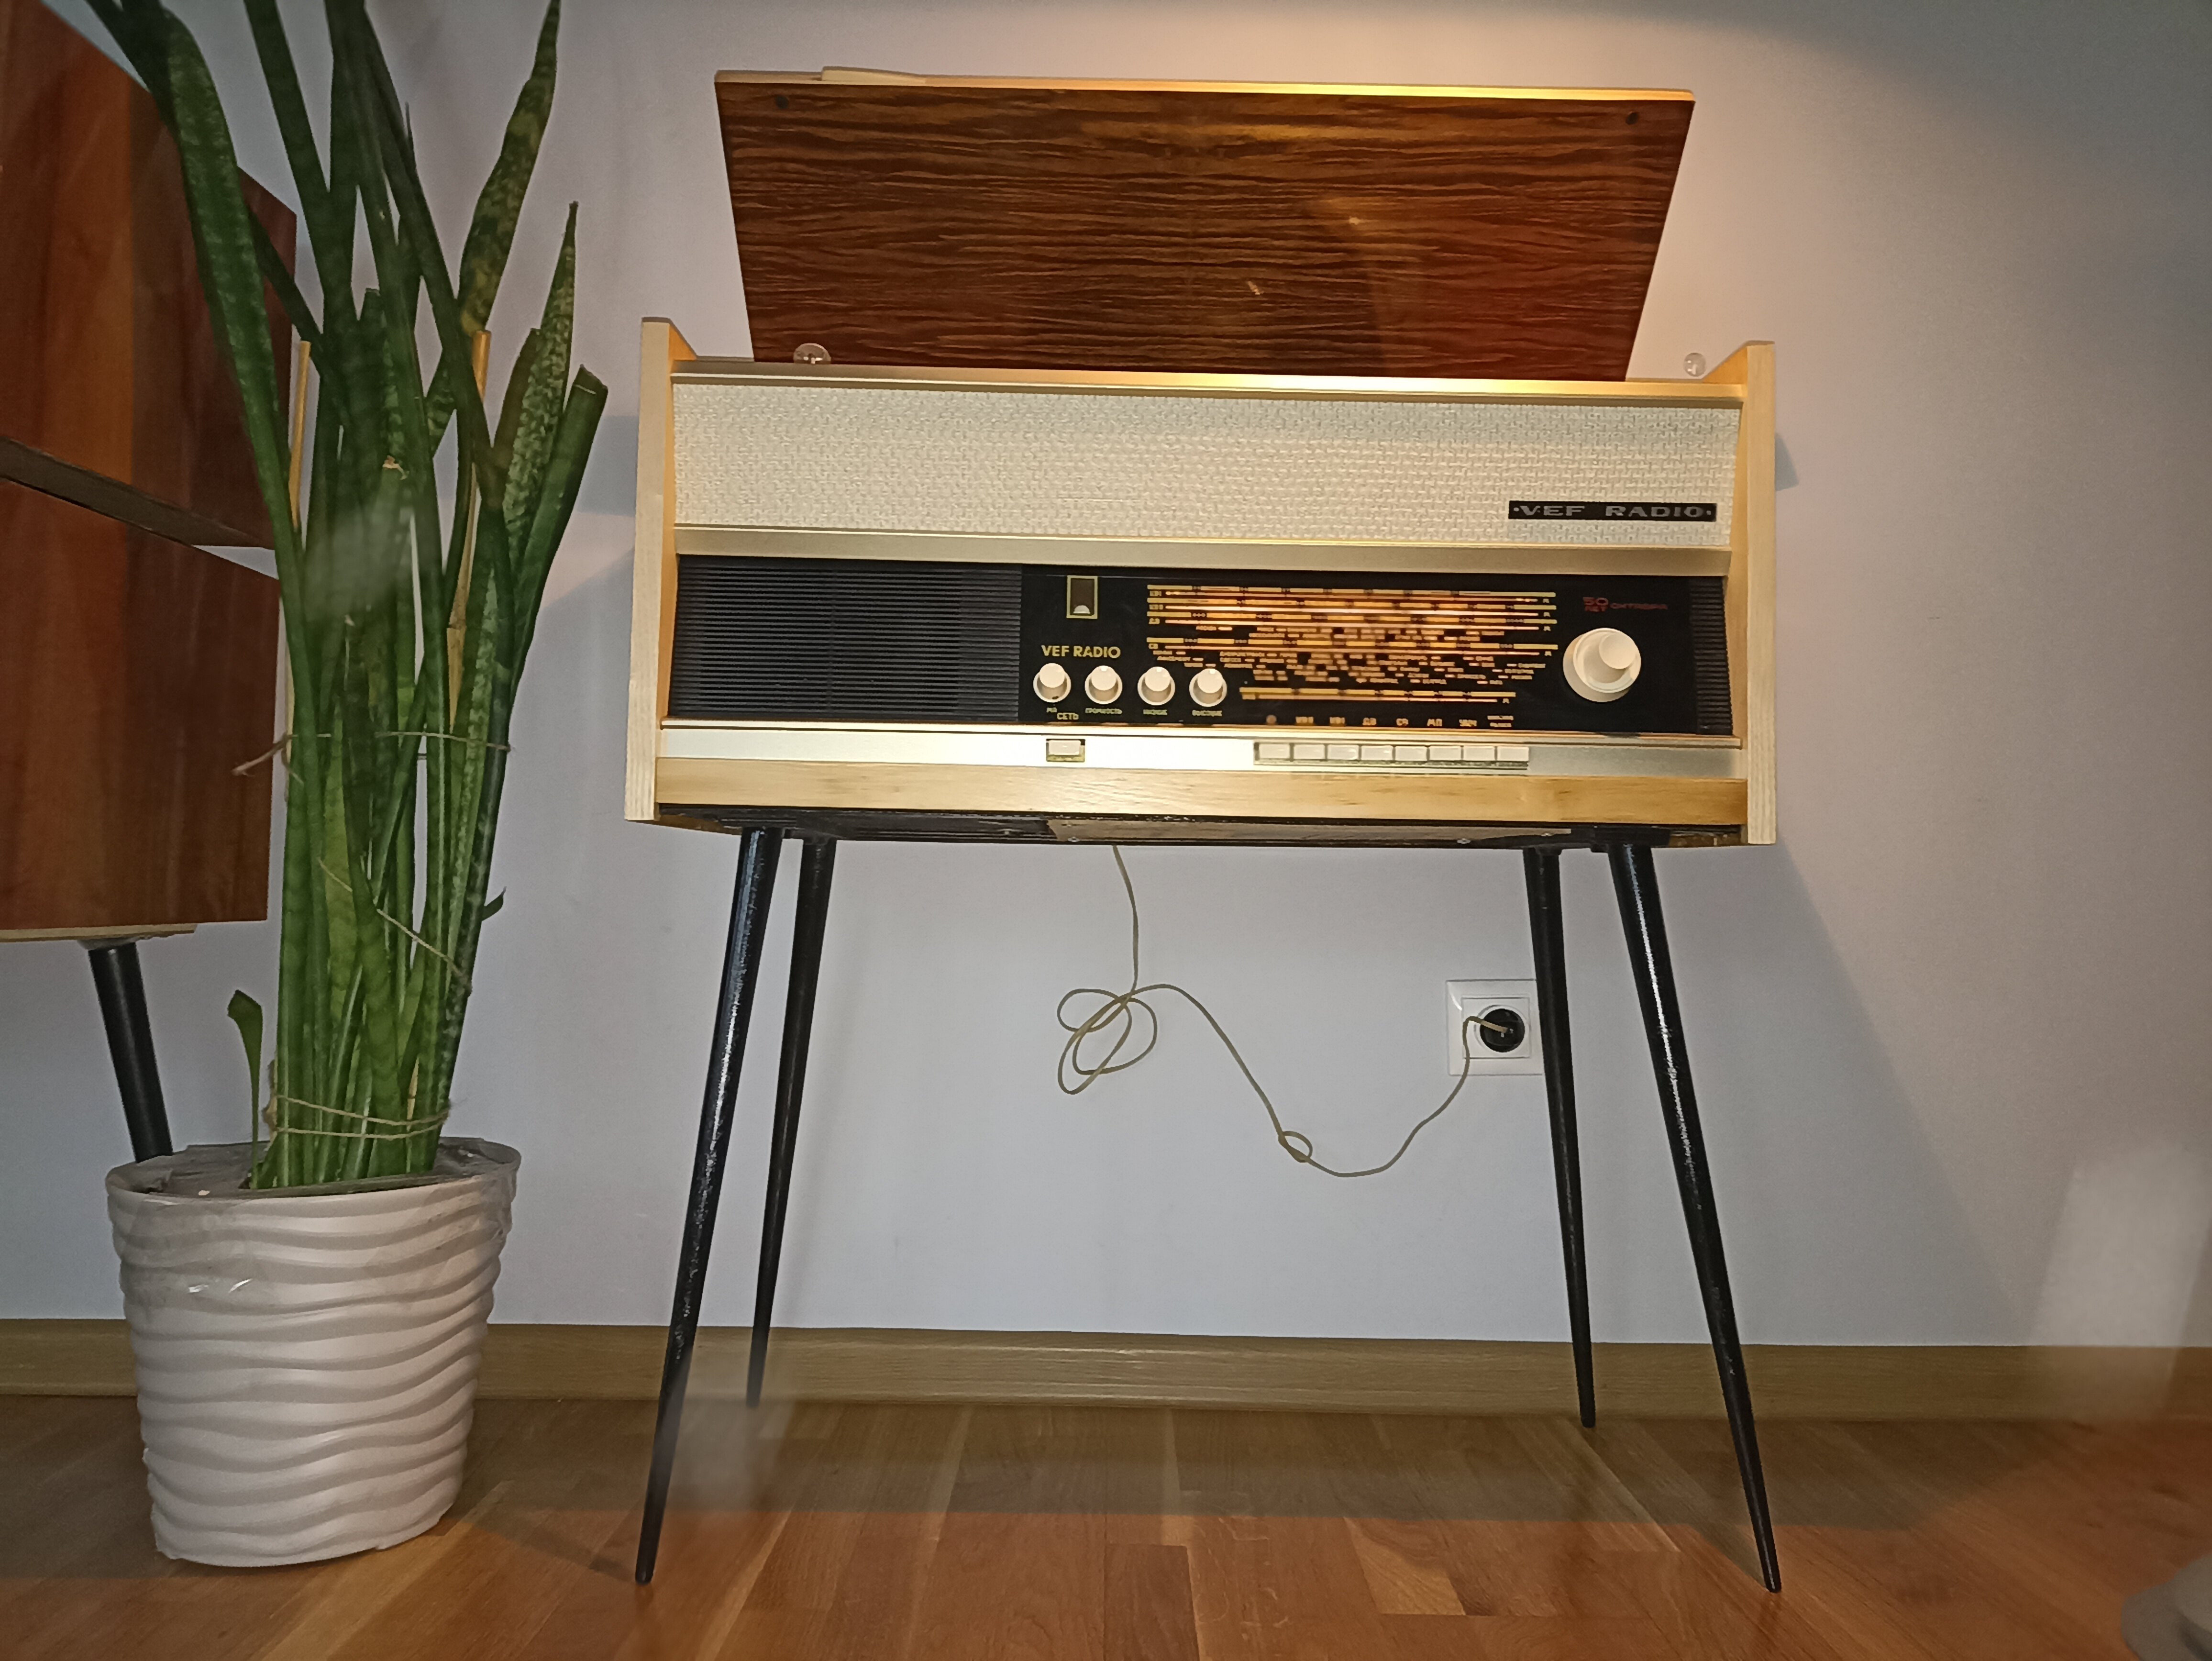 Юбилейная радиола VEF Radio 1967г с Bluetooth - ламповая стационарная радиола после реставрации